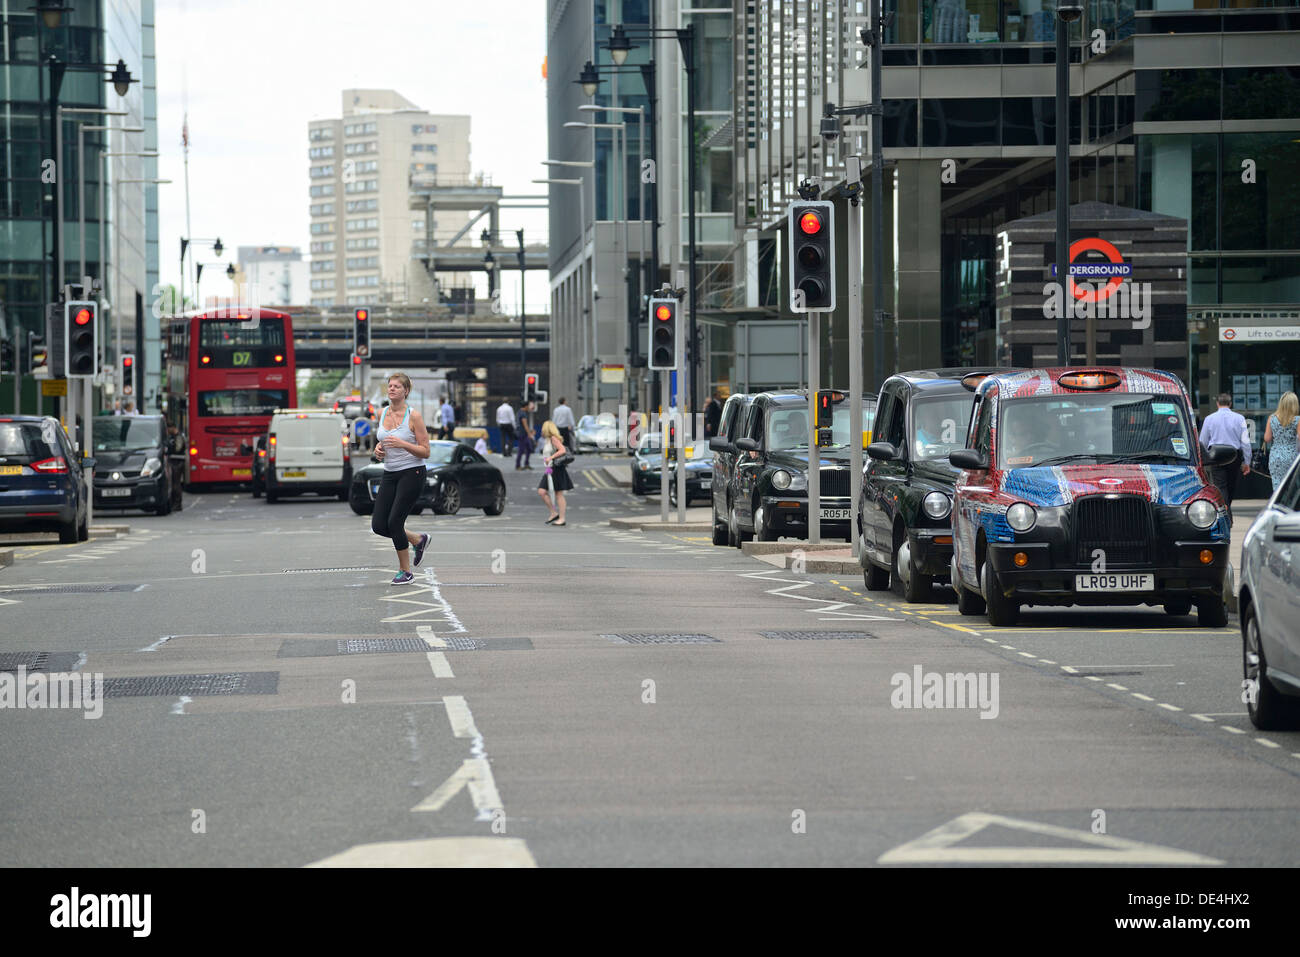 Canary Wharf rue animée avec des gens faisant du jogging, de la marche ou tout simplement se précipiter au travail Banque D'Images